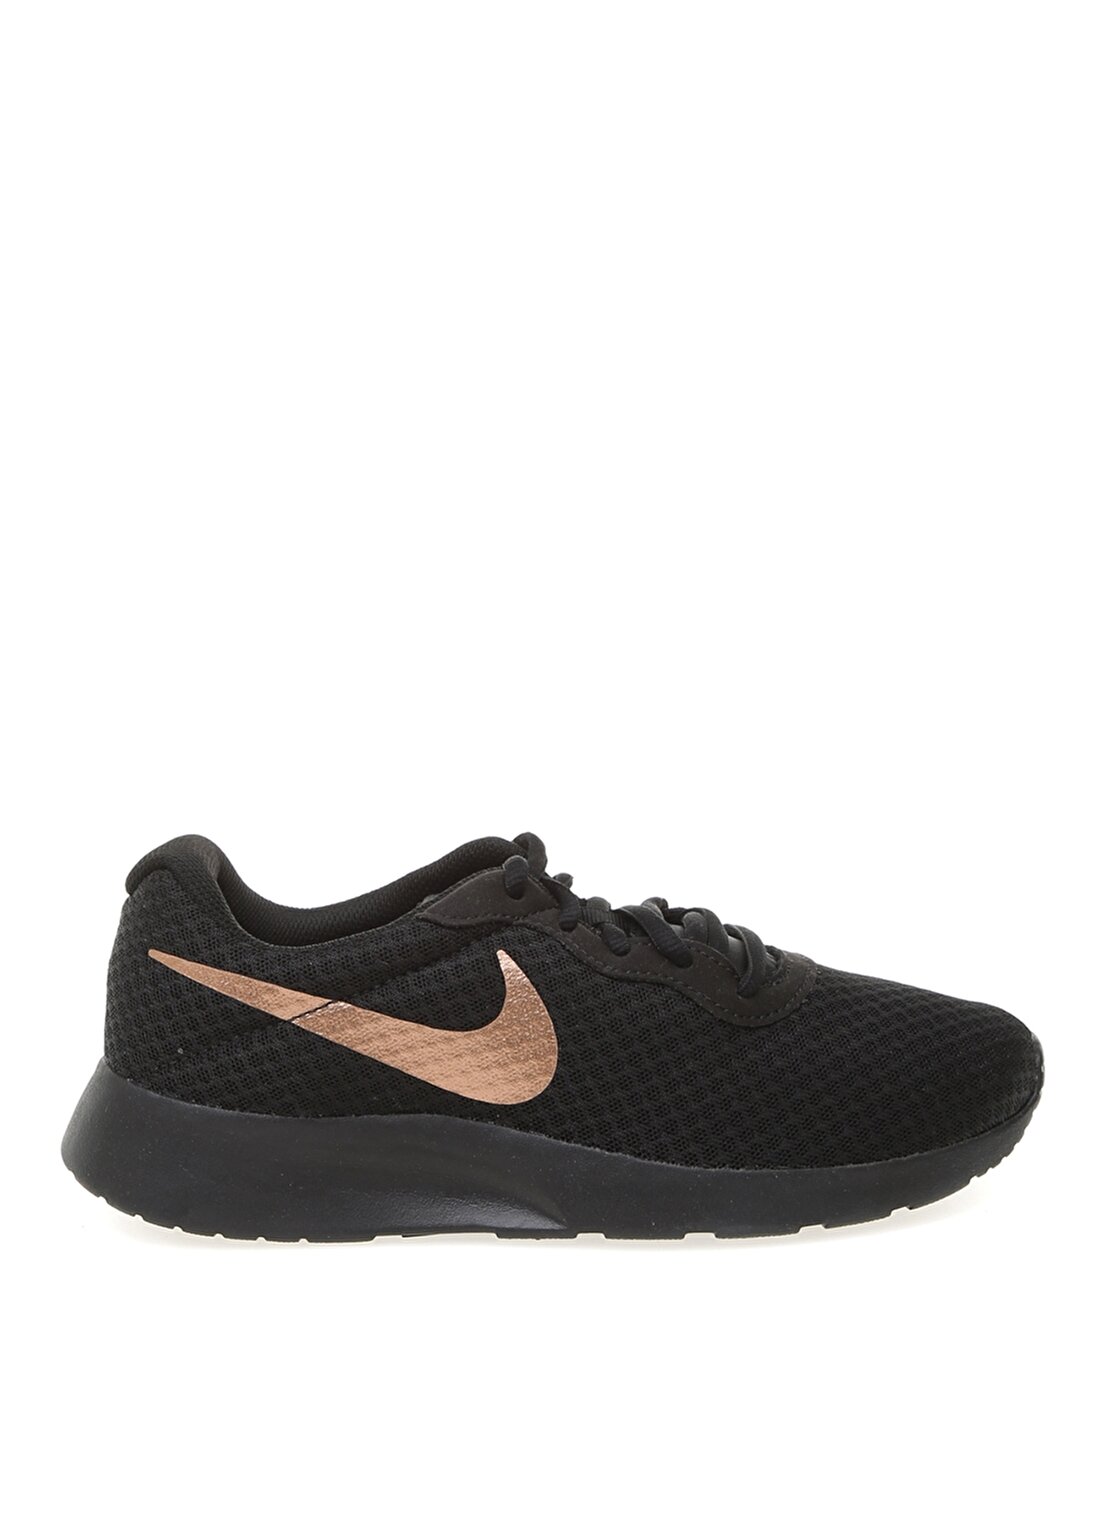 Nike 812655-005 Wmns Nike Tanjun Siyah - Gri - Gümüş Kadın Lifestyle Ayakkabı